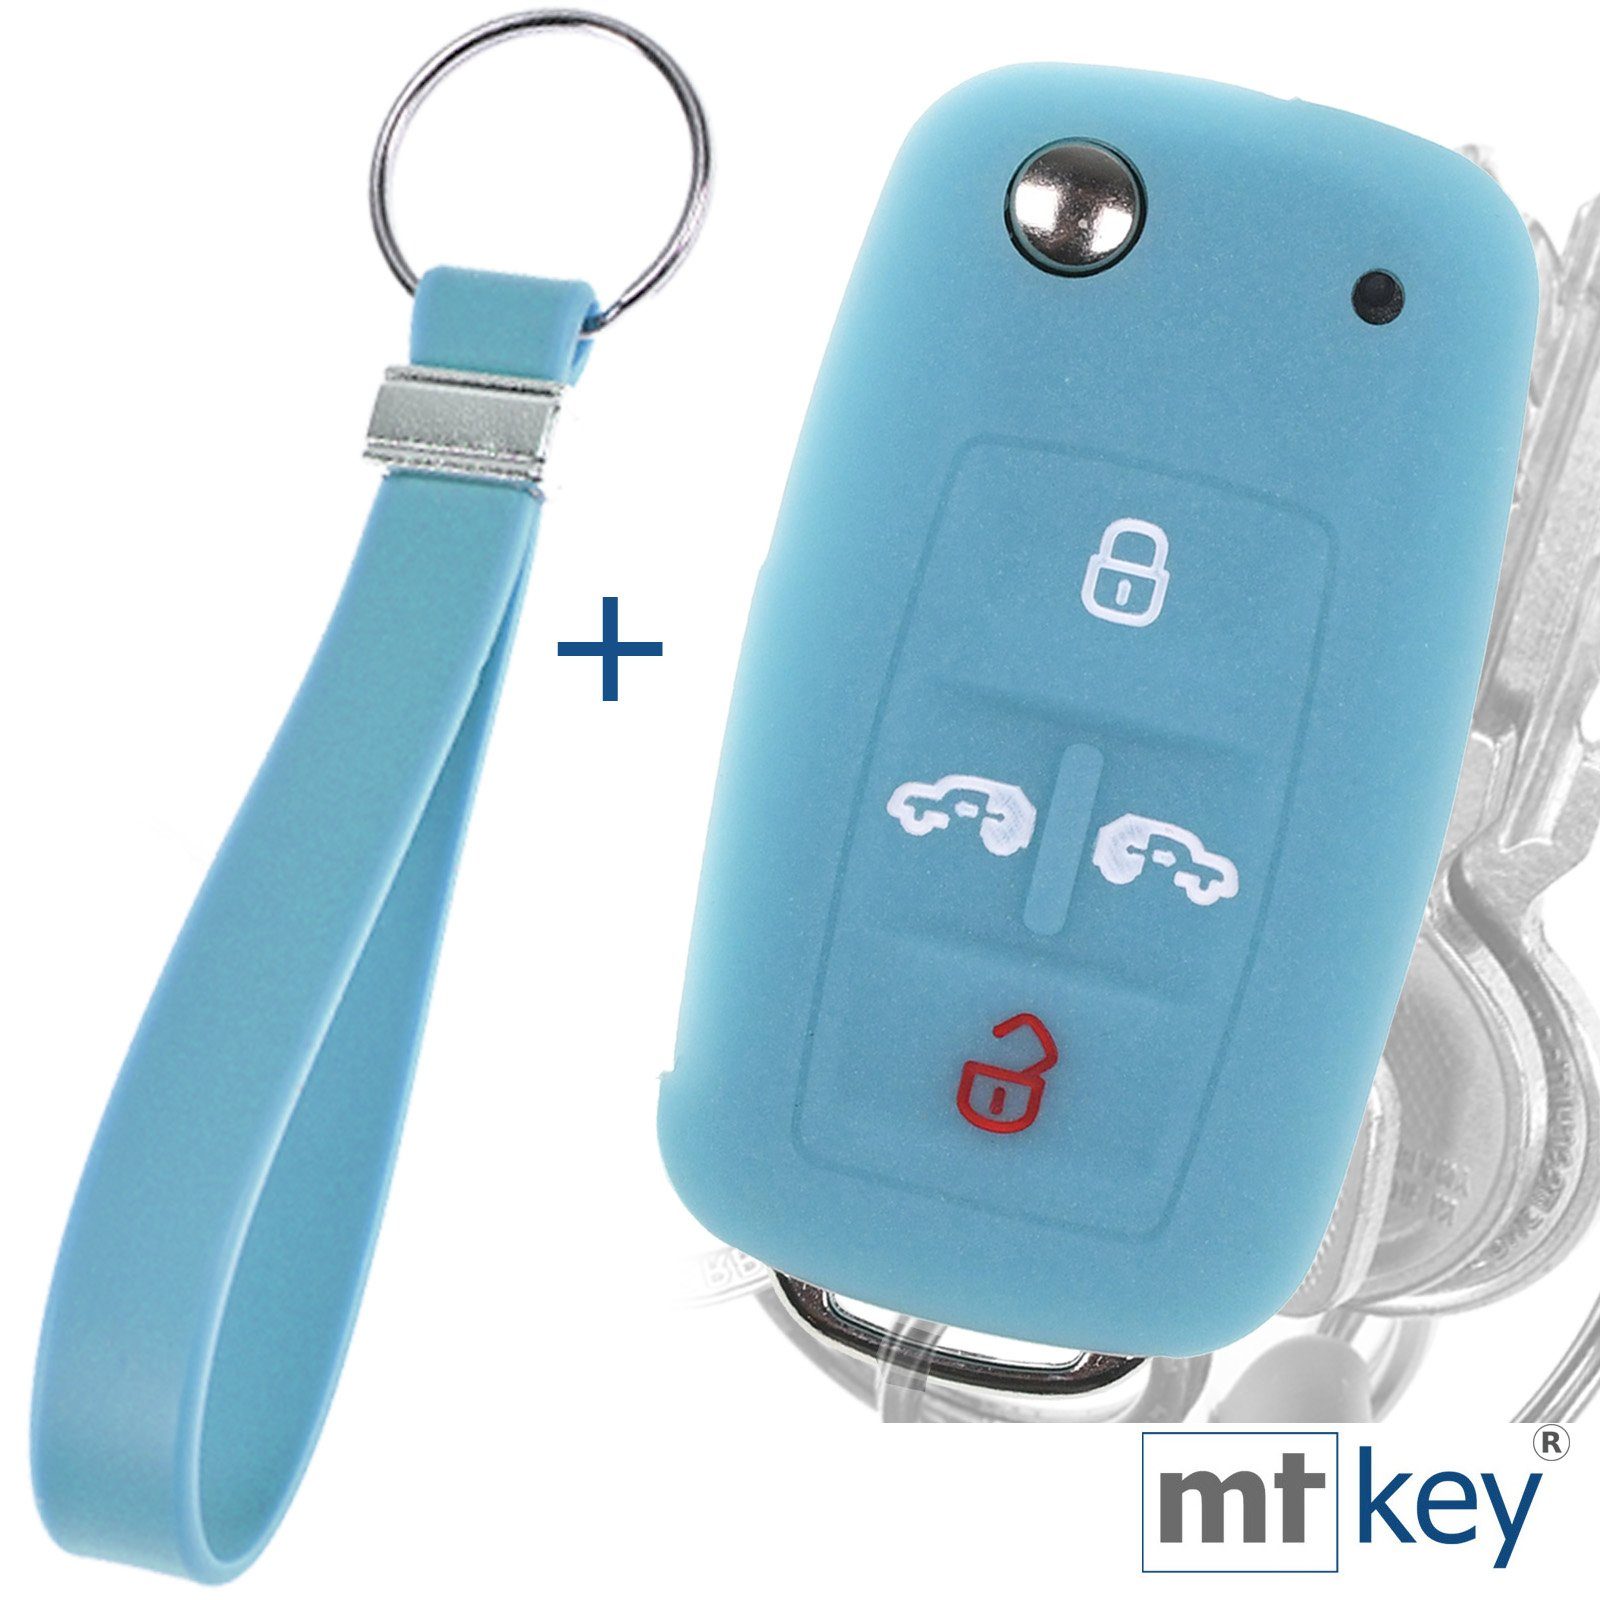 mt-key Schlüsseltasche Autoschlüssel Silikon Schutzhülle Wabe Design Glowblue + Schlüsselband, für VW Multivan Sharan T5 T6 Caddy Seat Alhambra 4 Tasten Schlüssel Fluoreszierend Blau